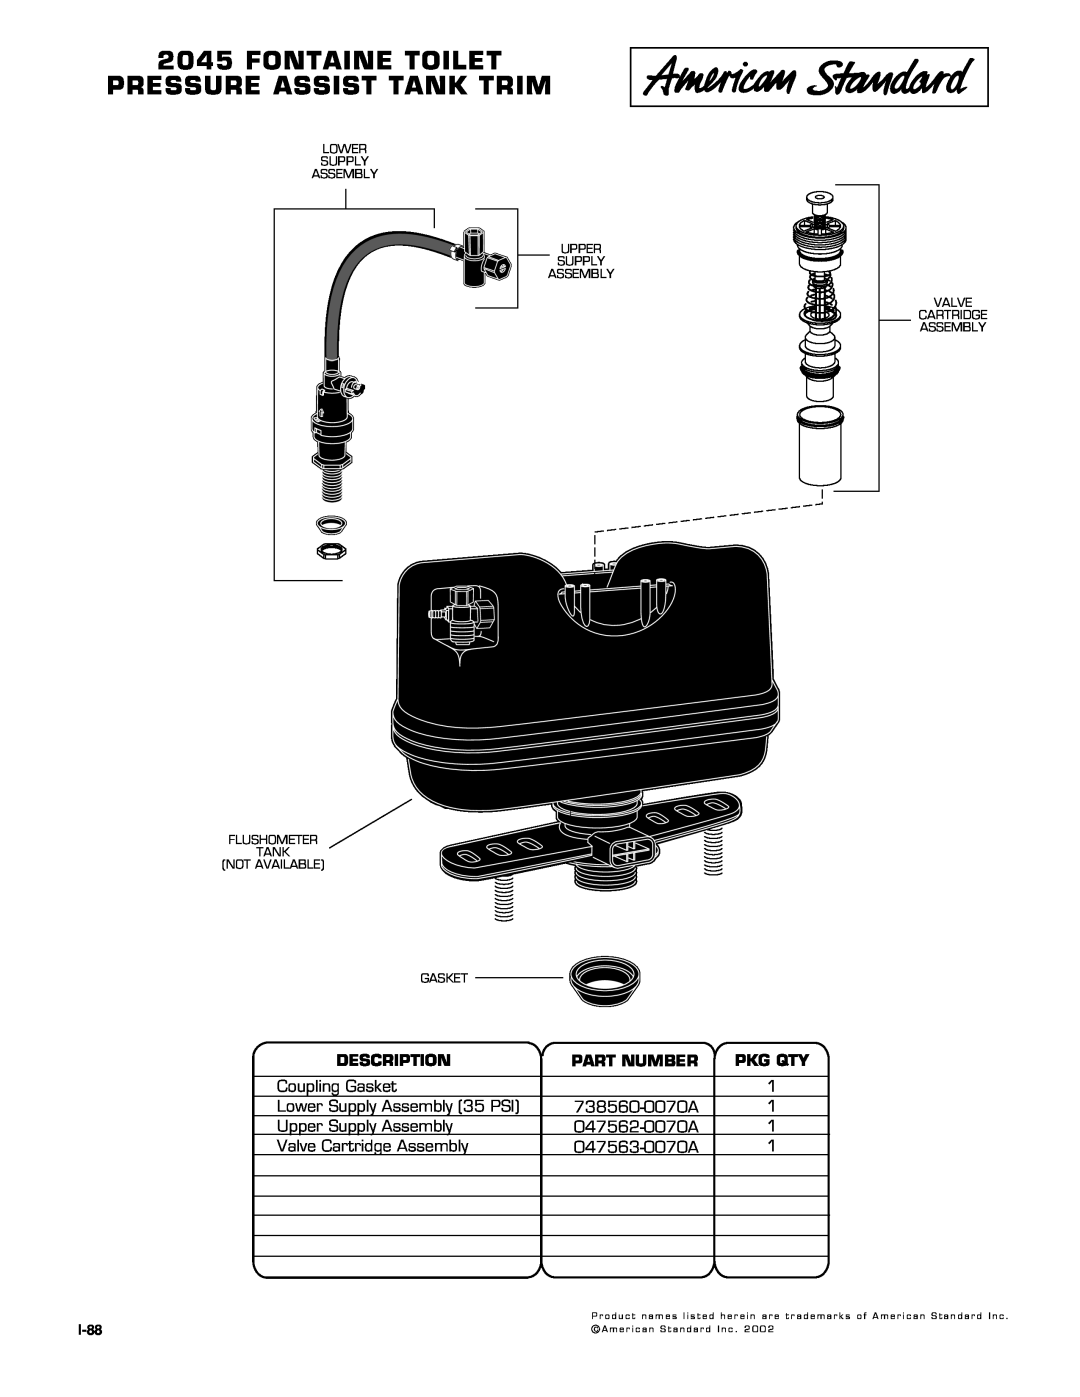 American Standard 2045.013 manual Fontaine Toilet Pressure Assist Tank Trim, Description, Part Number, Pkg Qty 